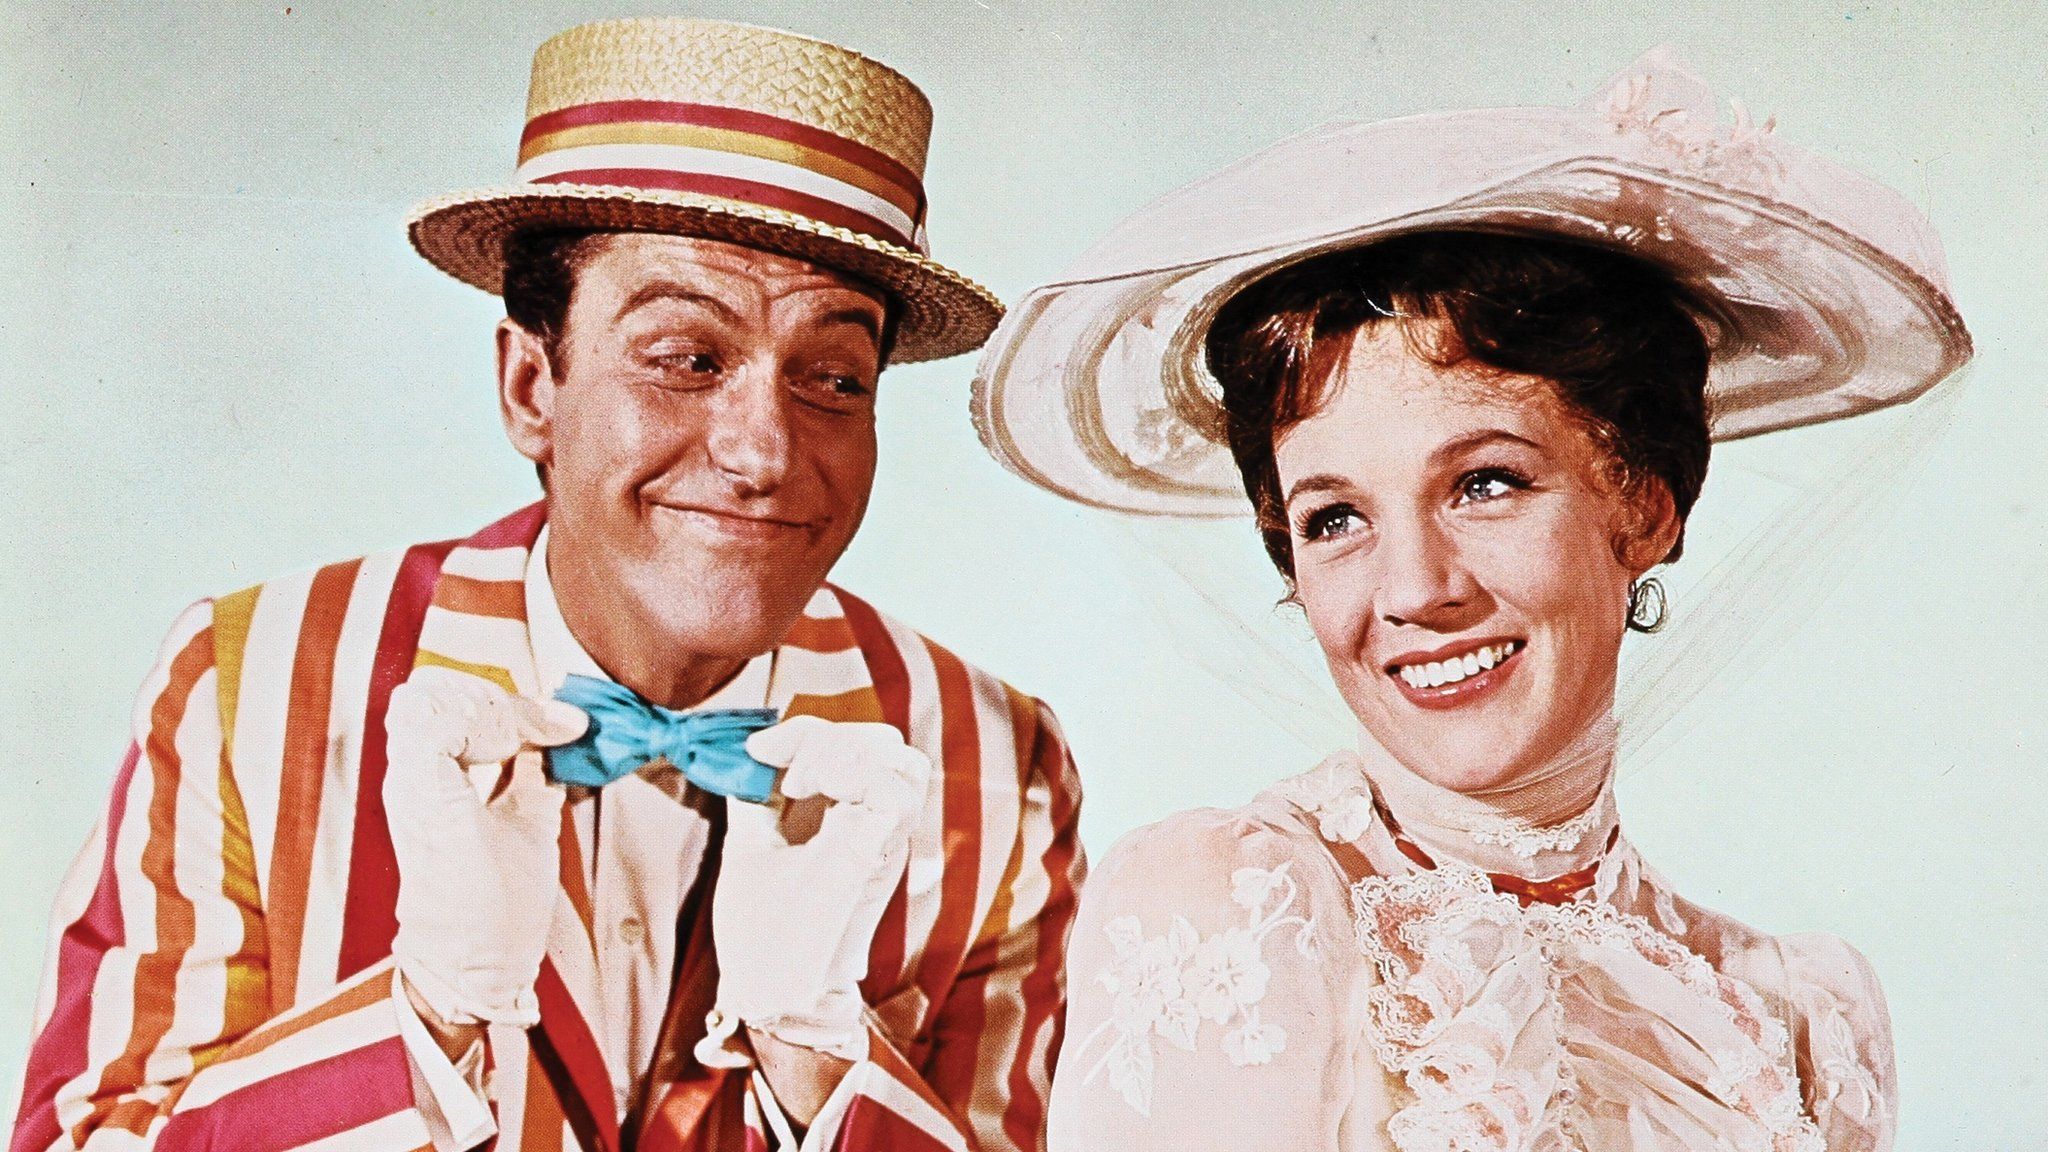 Dick Van Dyke and Julie Andrews